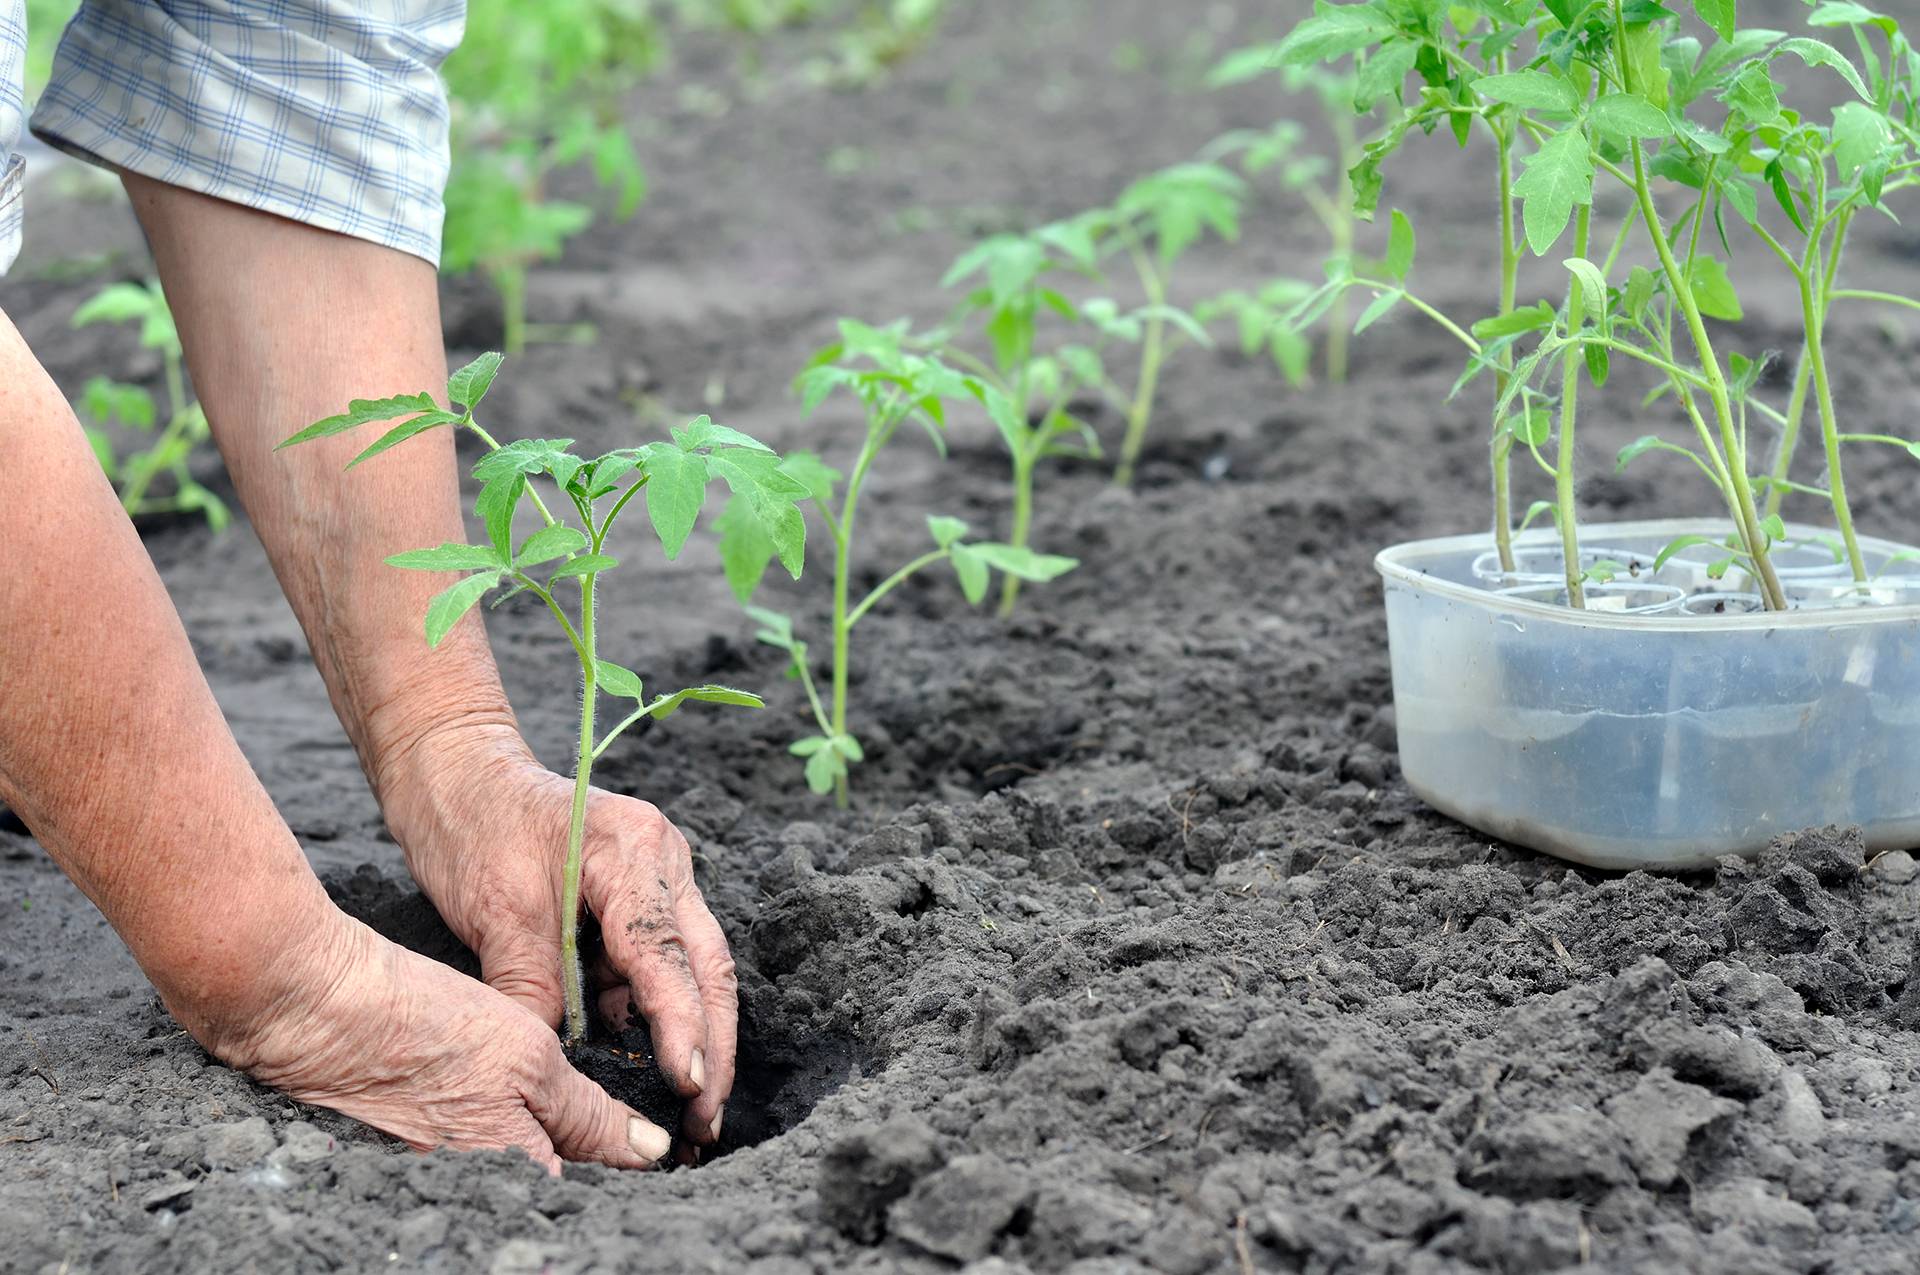 Выращивание рассады без земли: особенности нового безземельного способа посева семян в домашних условиях, нюансы высева в пластиковые бутылки и туалетную бумагу